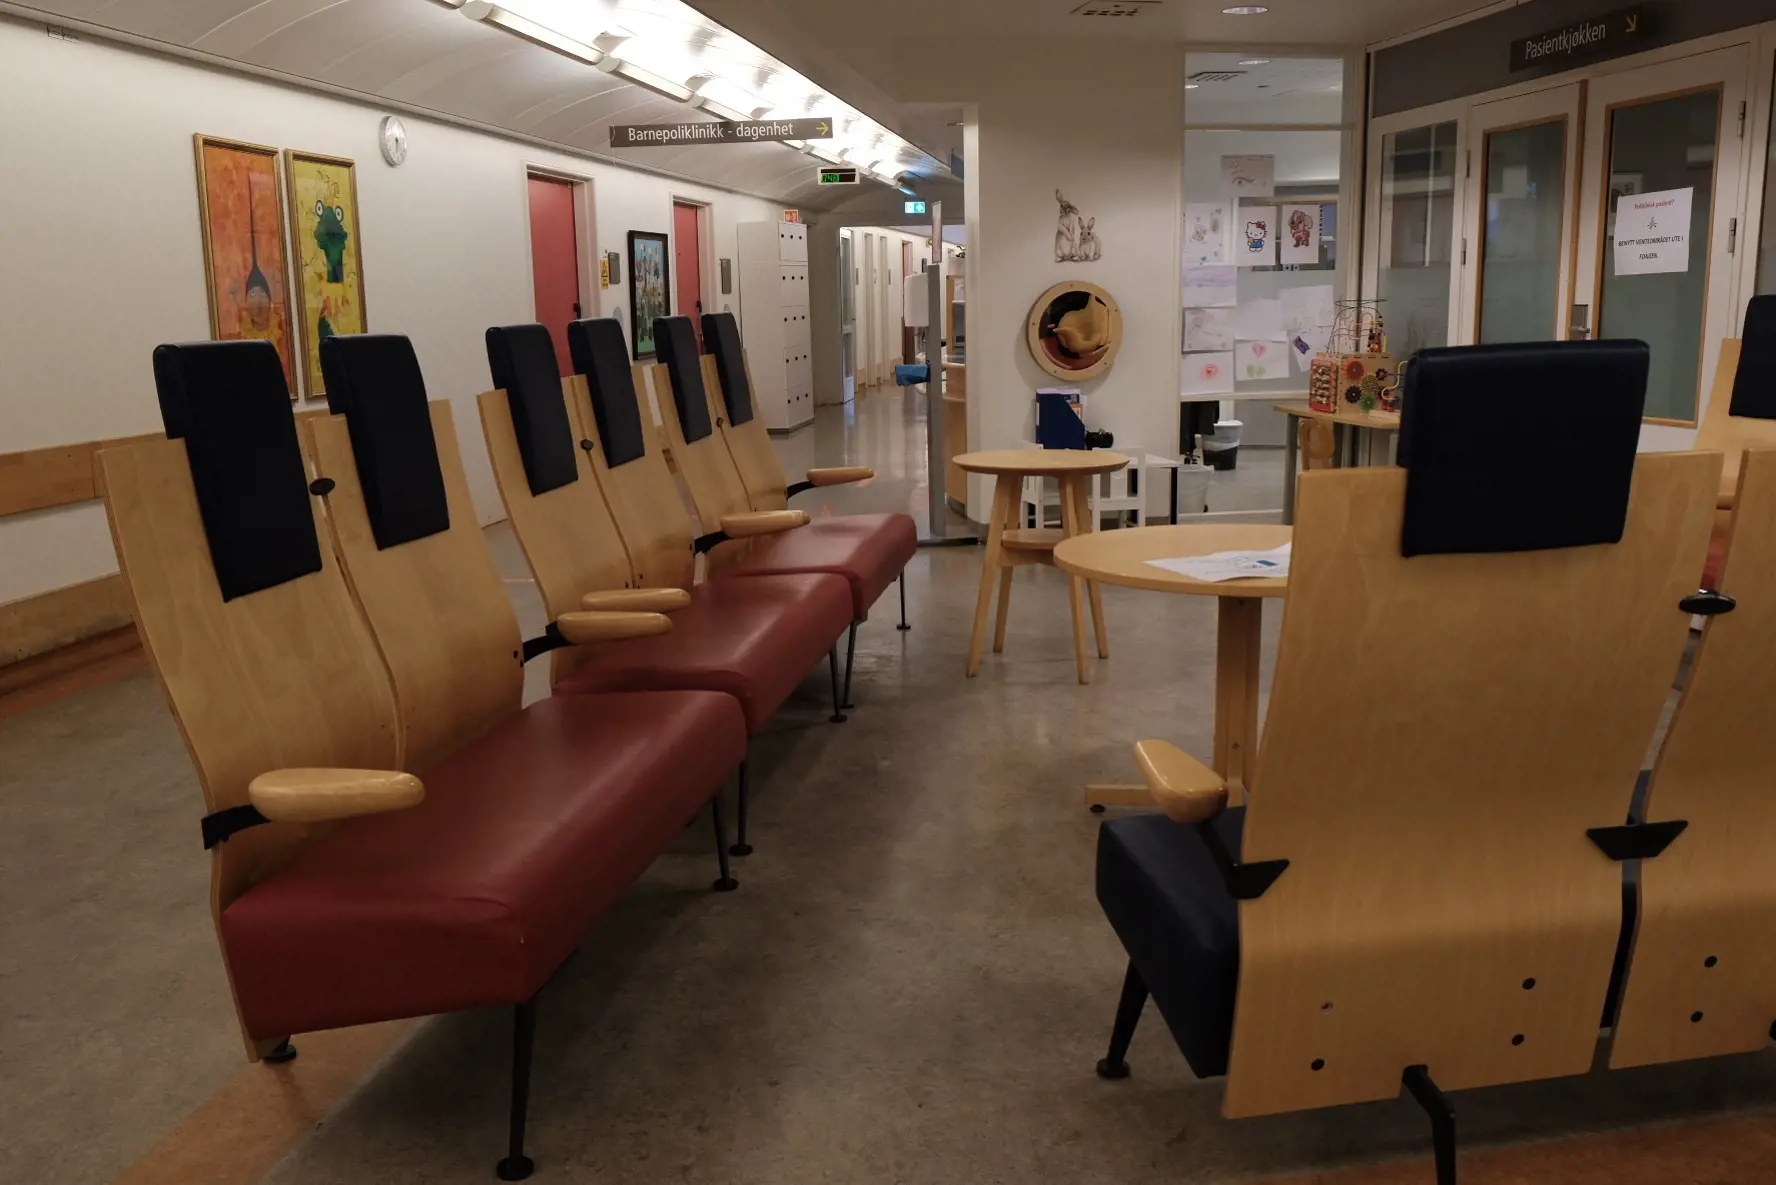 Venterommet til poliklinikken og dagenheten. Her er det massevis av stoler, bord og kunst på veggene.